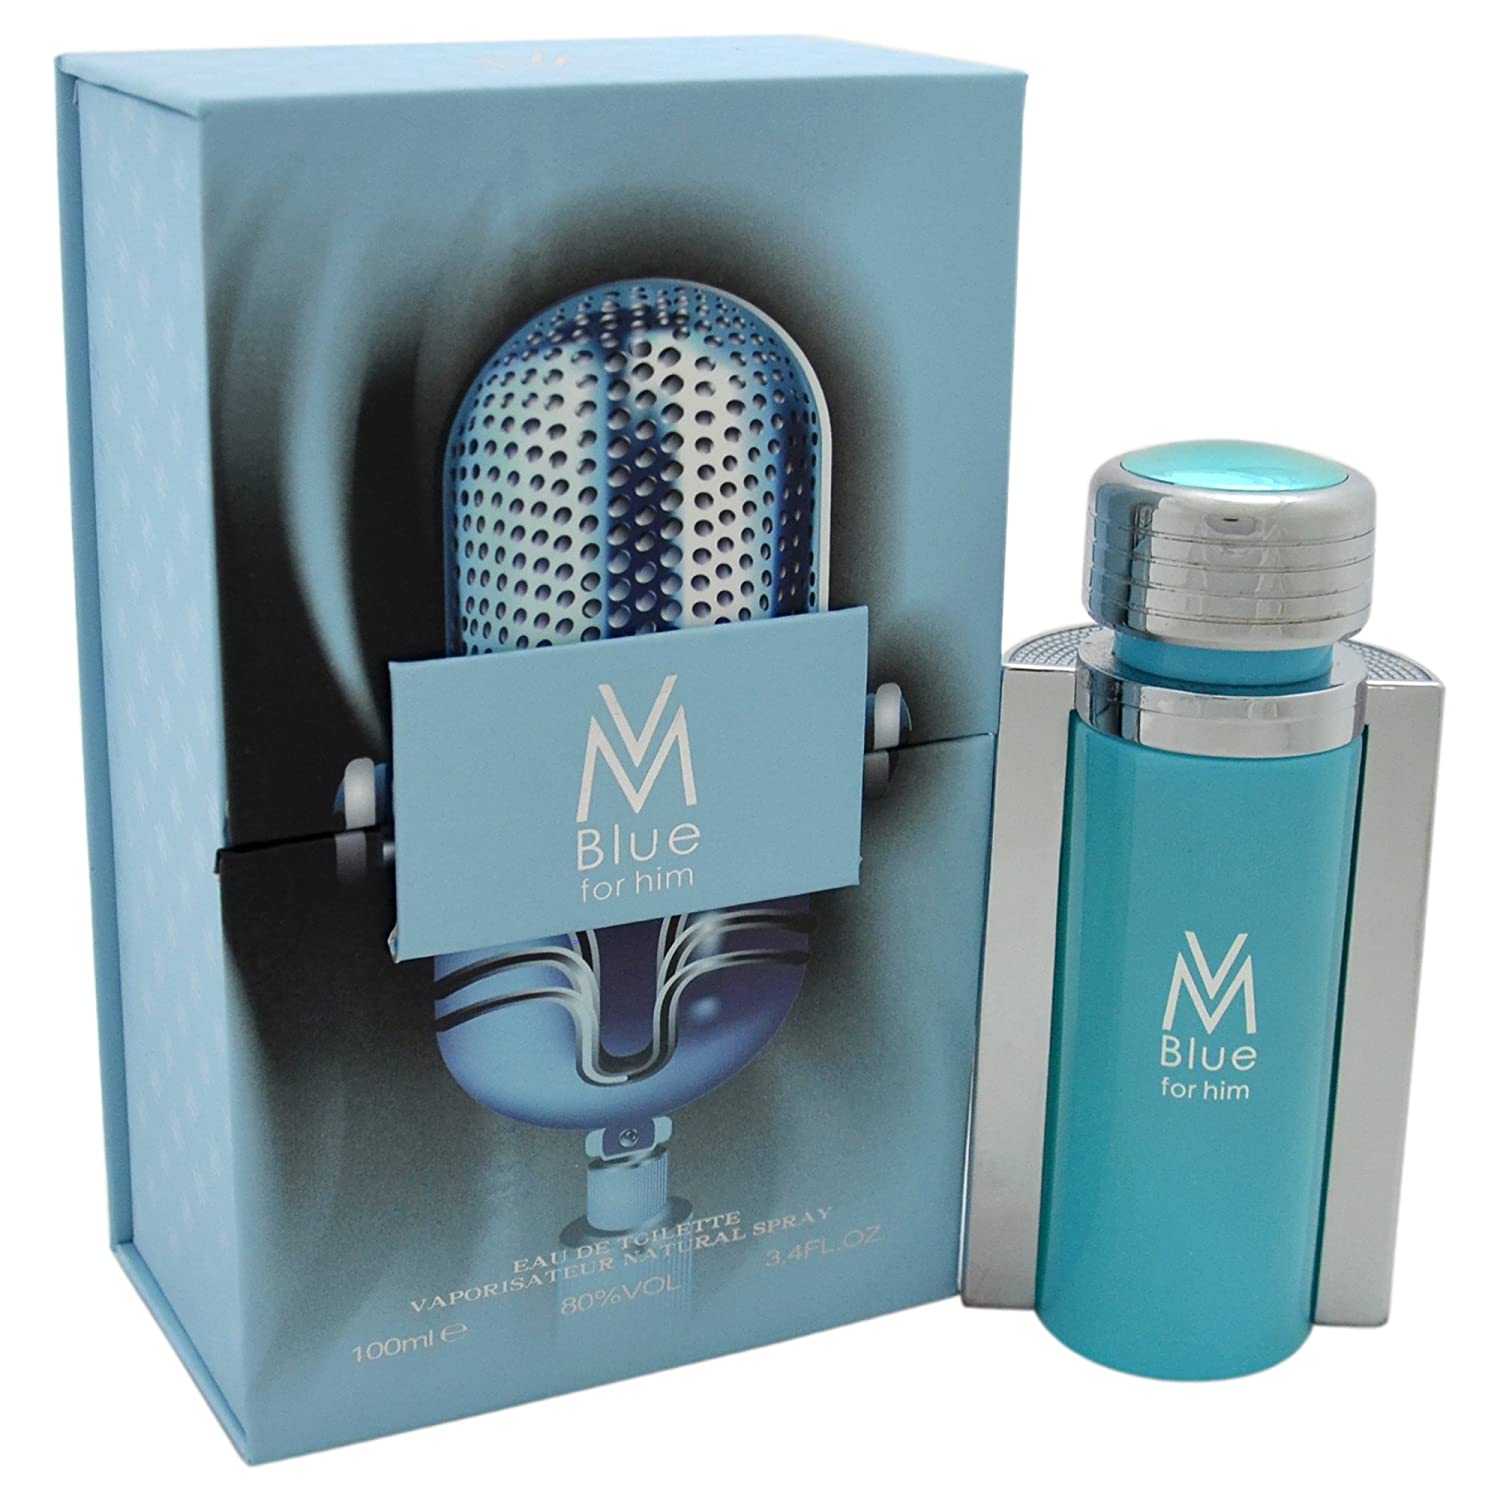 Victor Manuelle VM Blue Cologne for Men 3.4 oz Eau de Toilette Spray